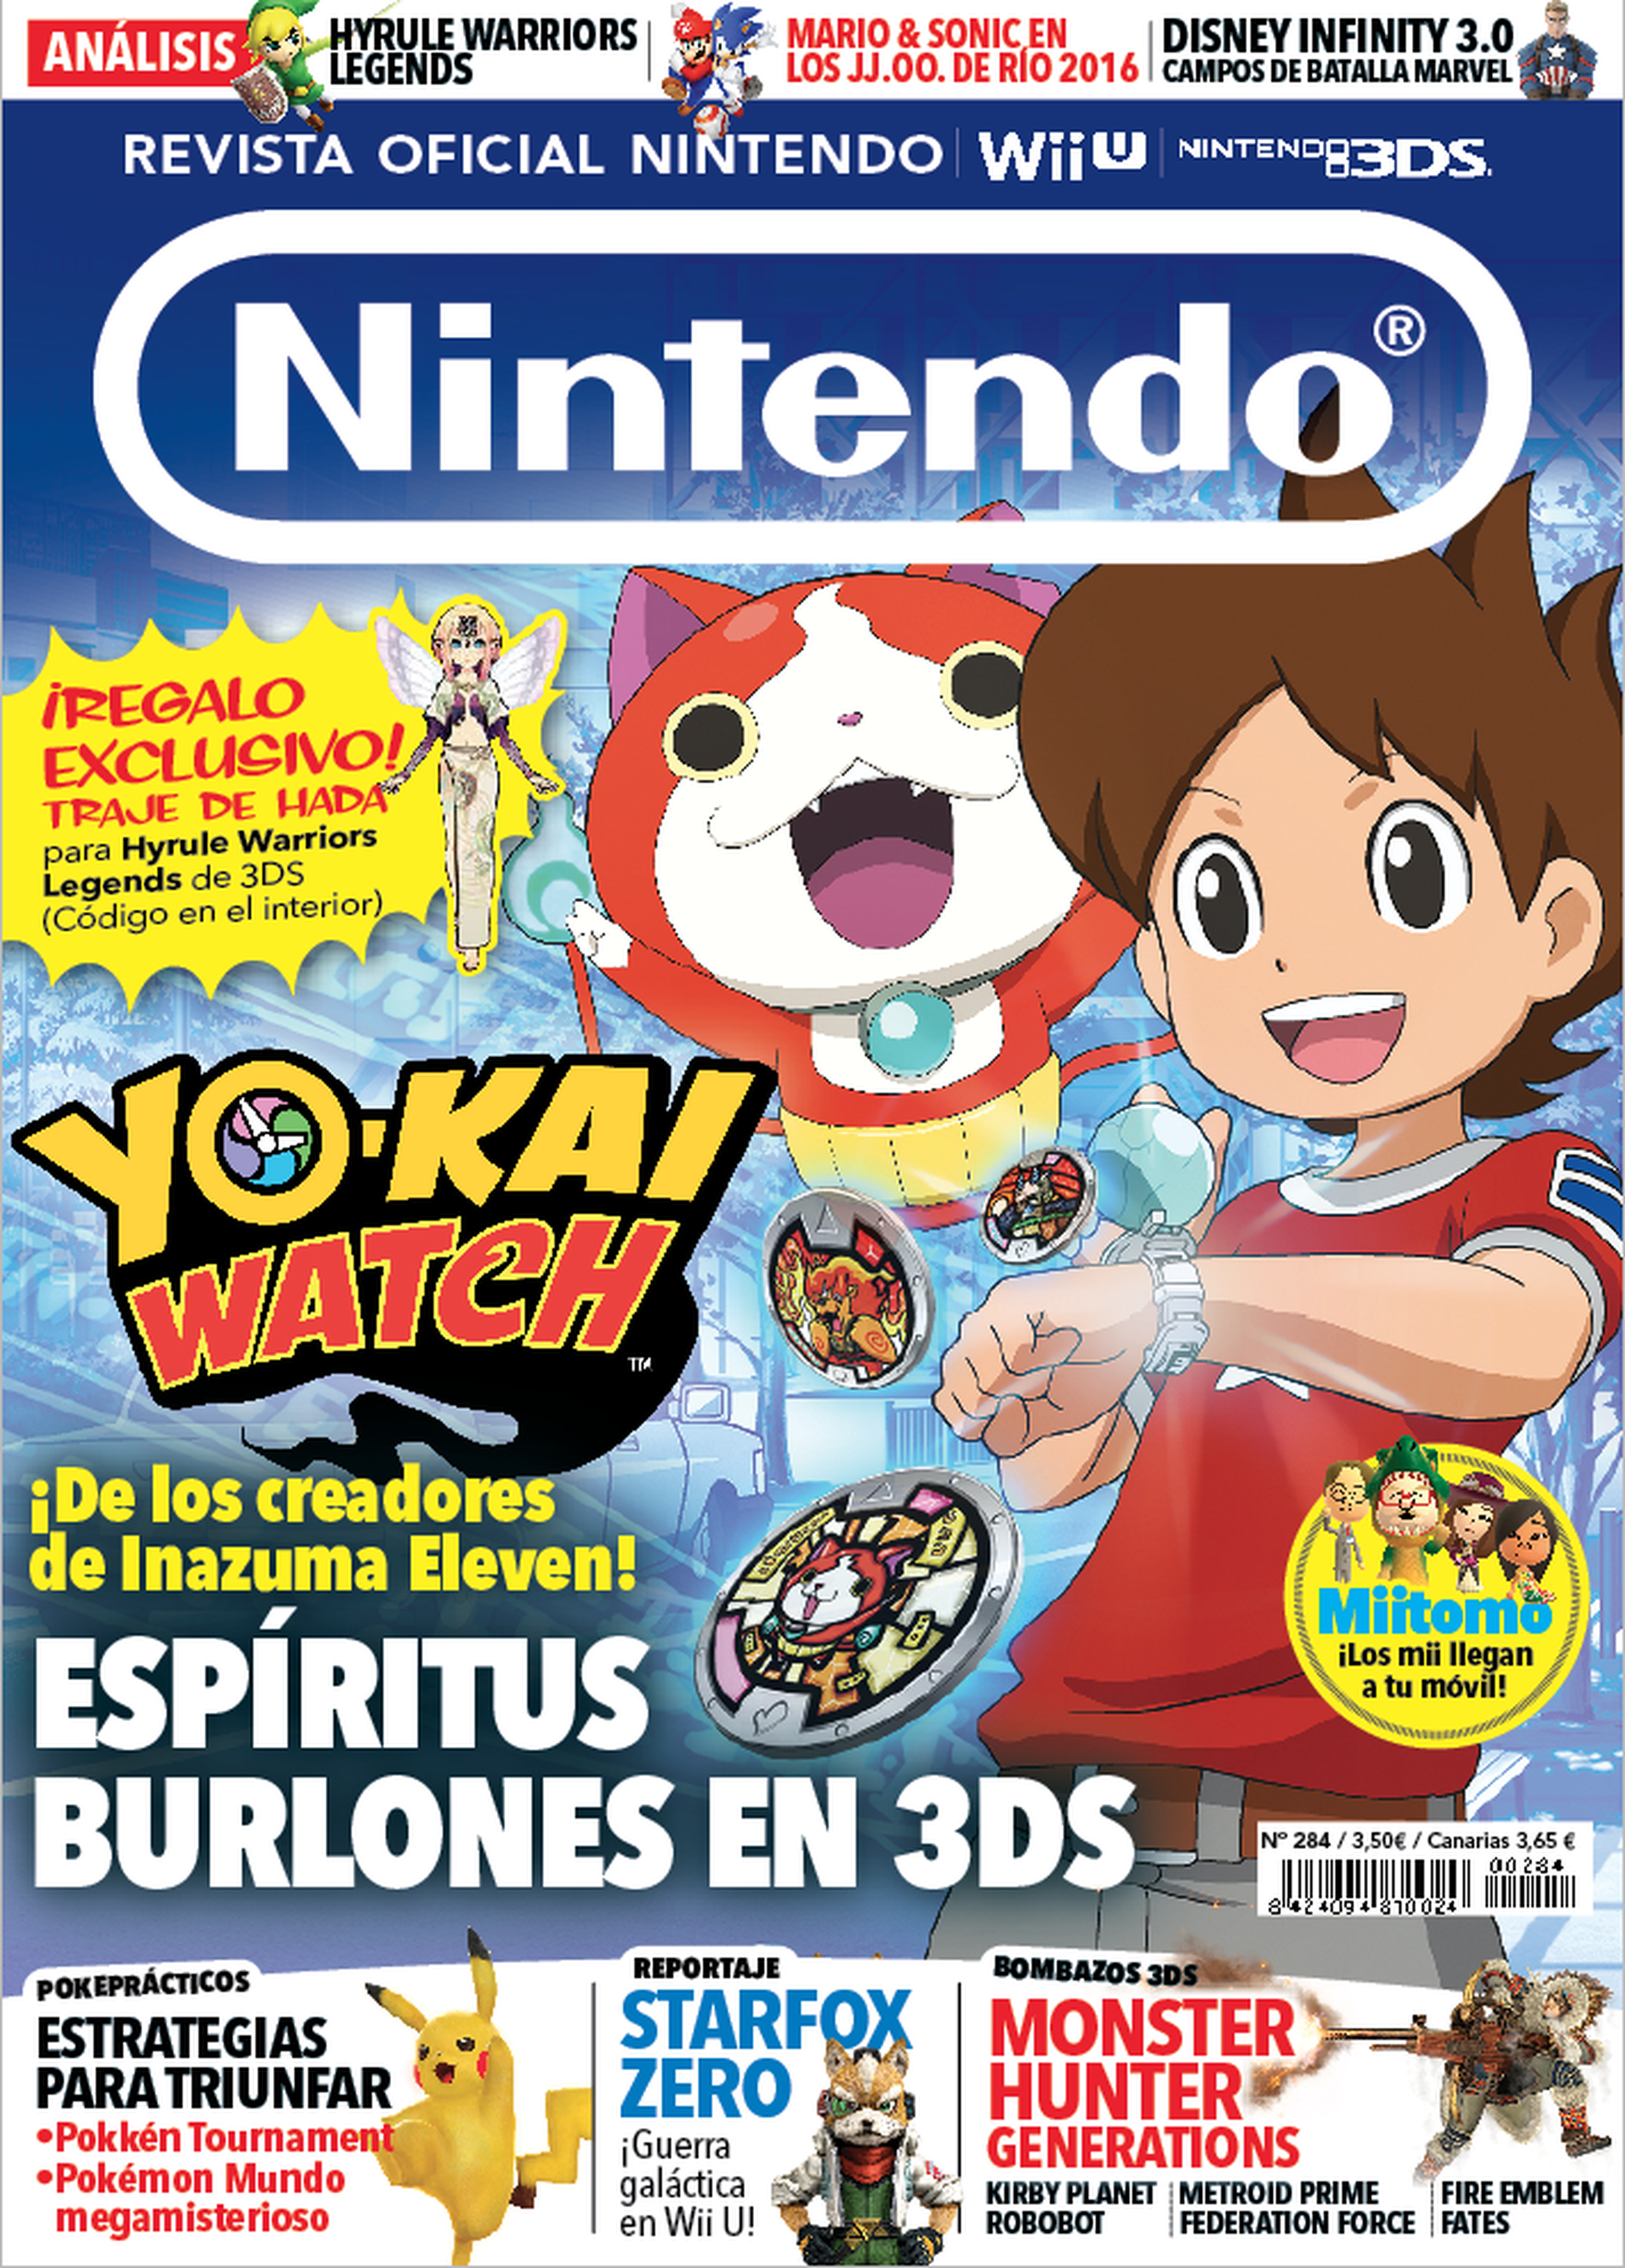 Revista Oficial Nintendo 284 ya la venta